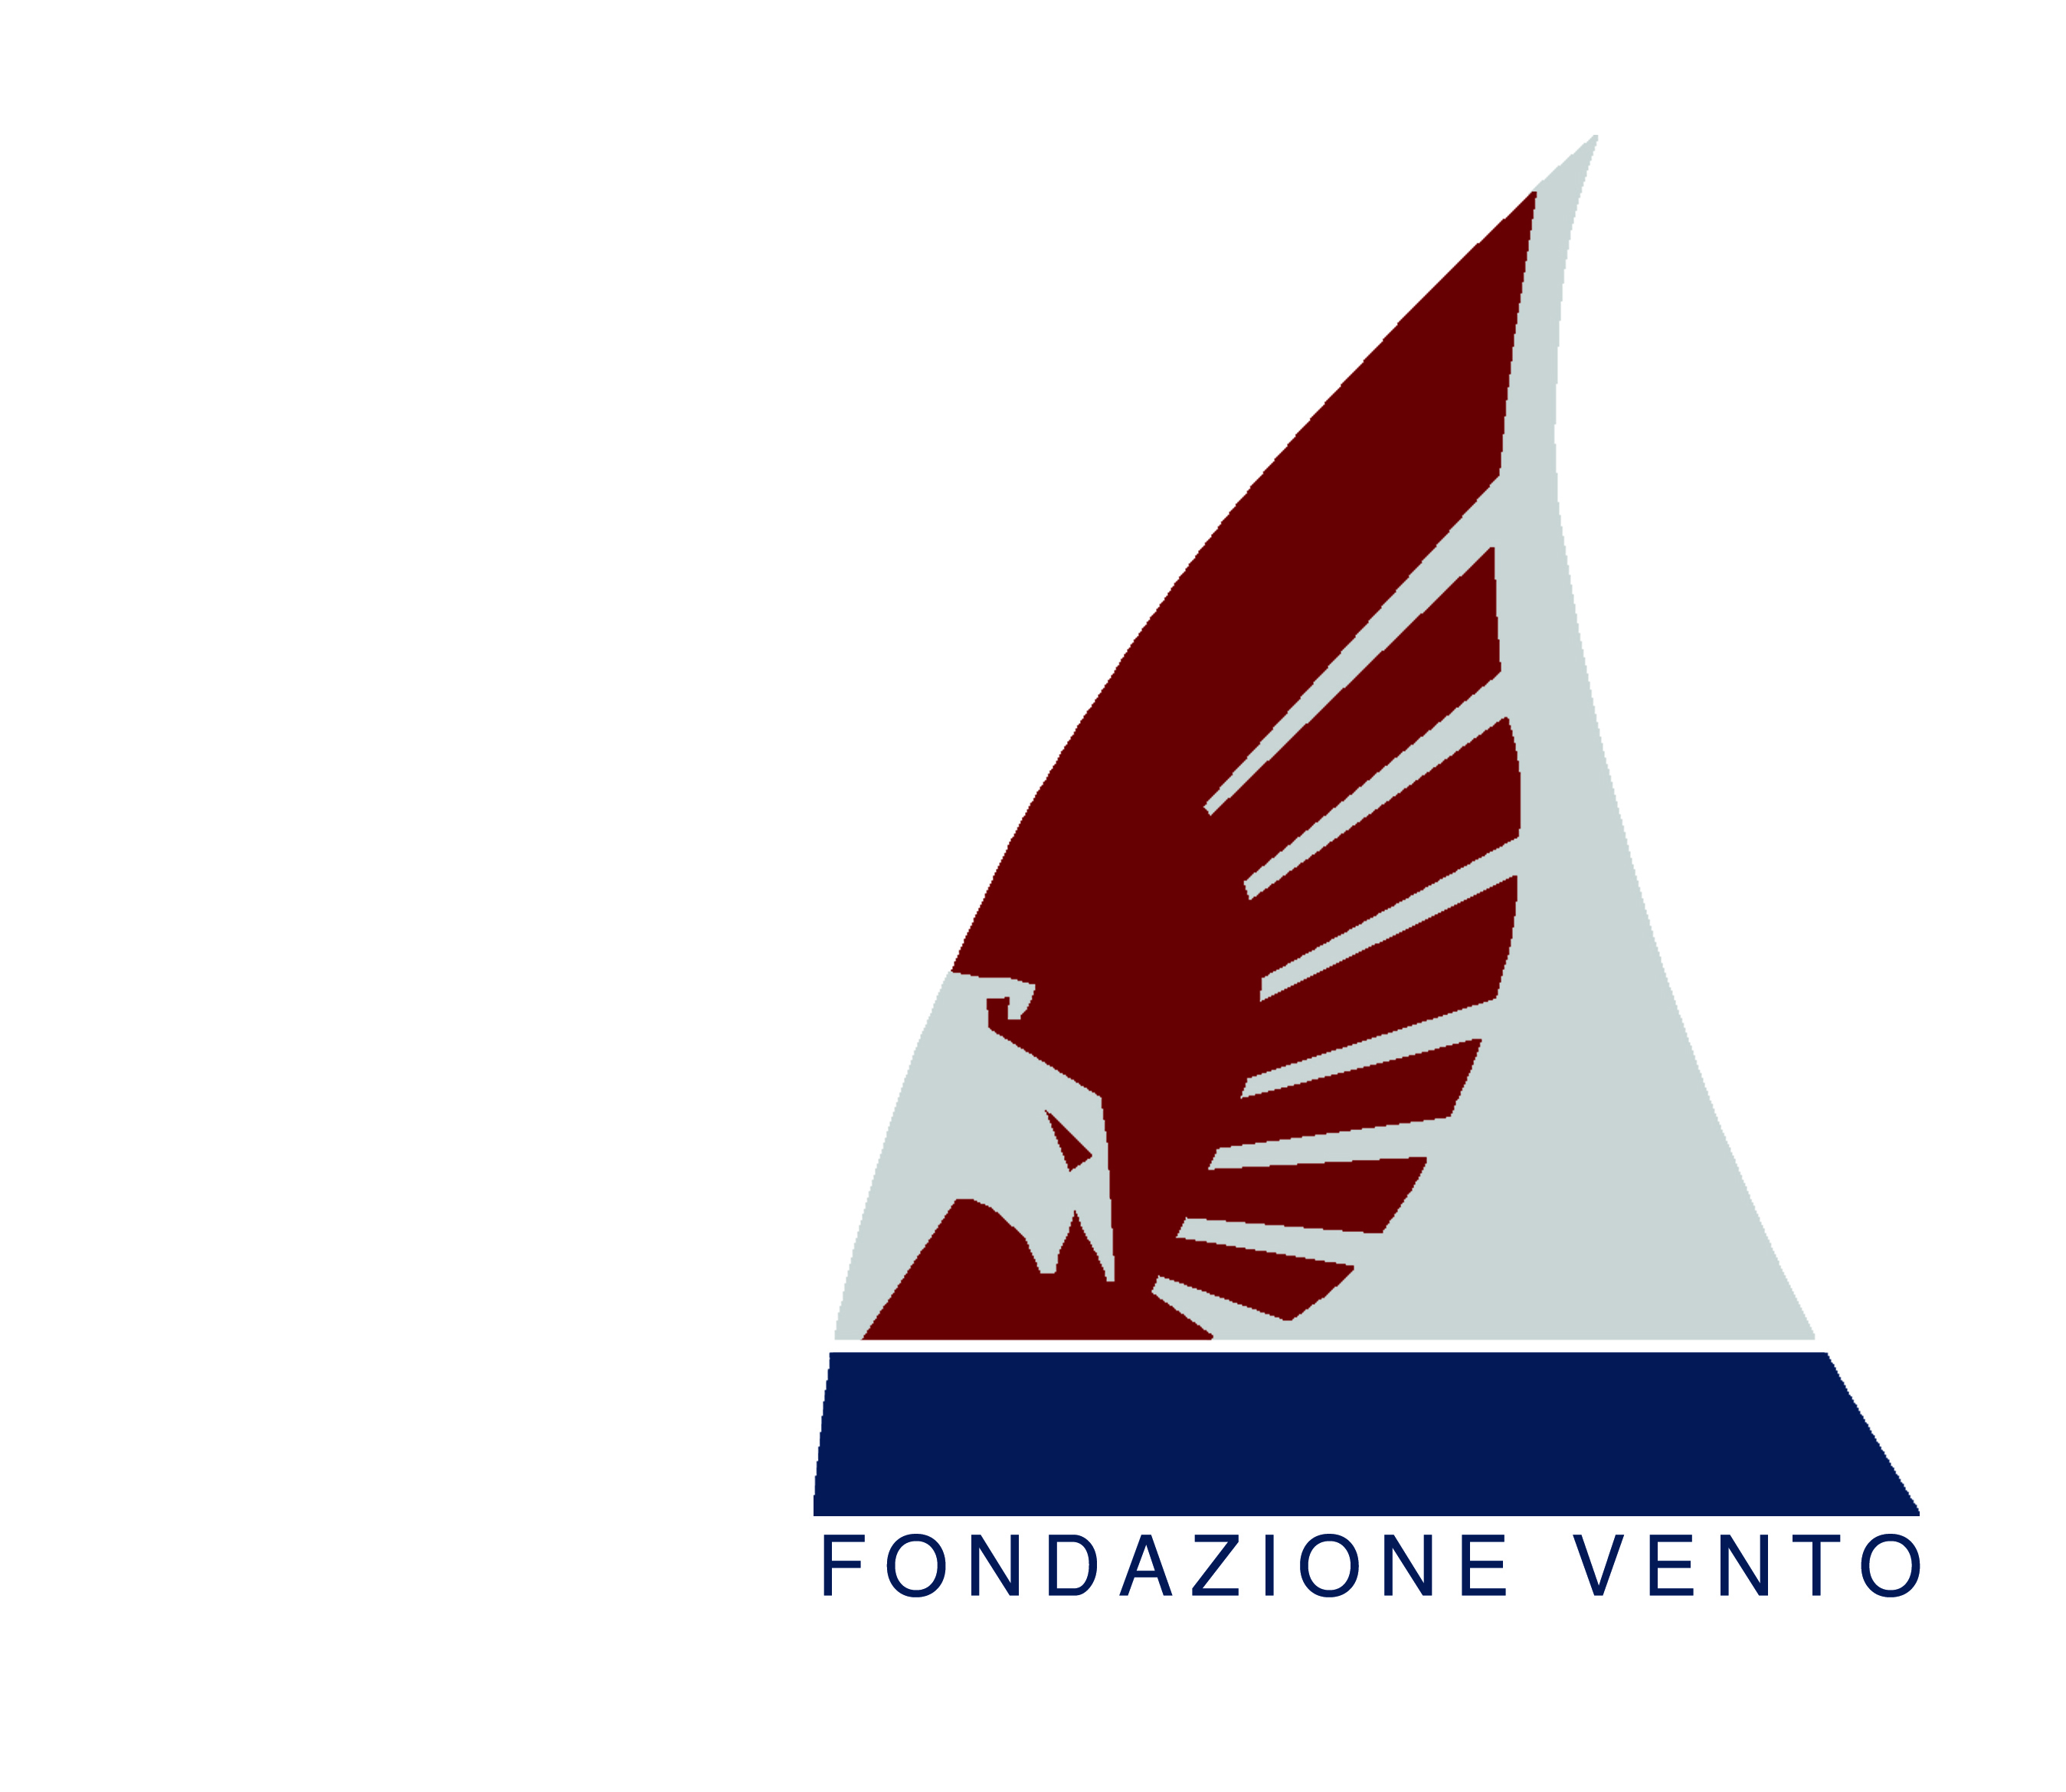 Fondazione Vento e la storia dietro l'app Sbullit Action